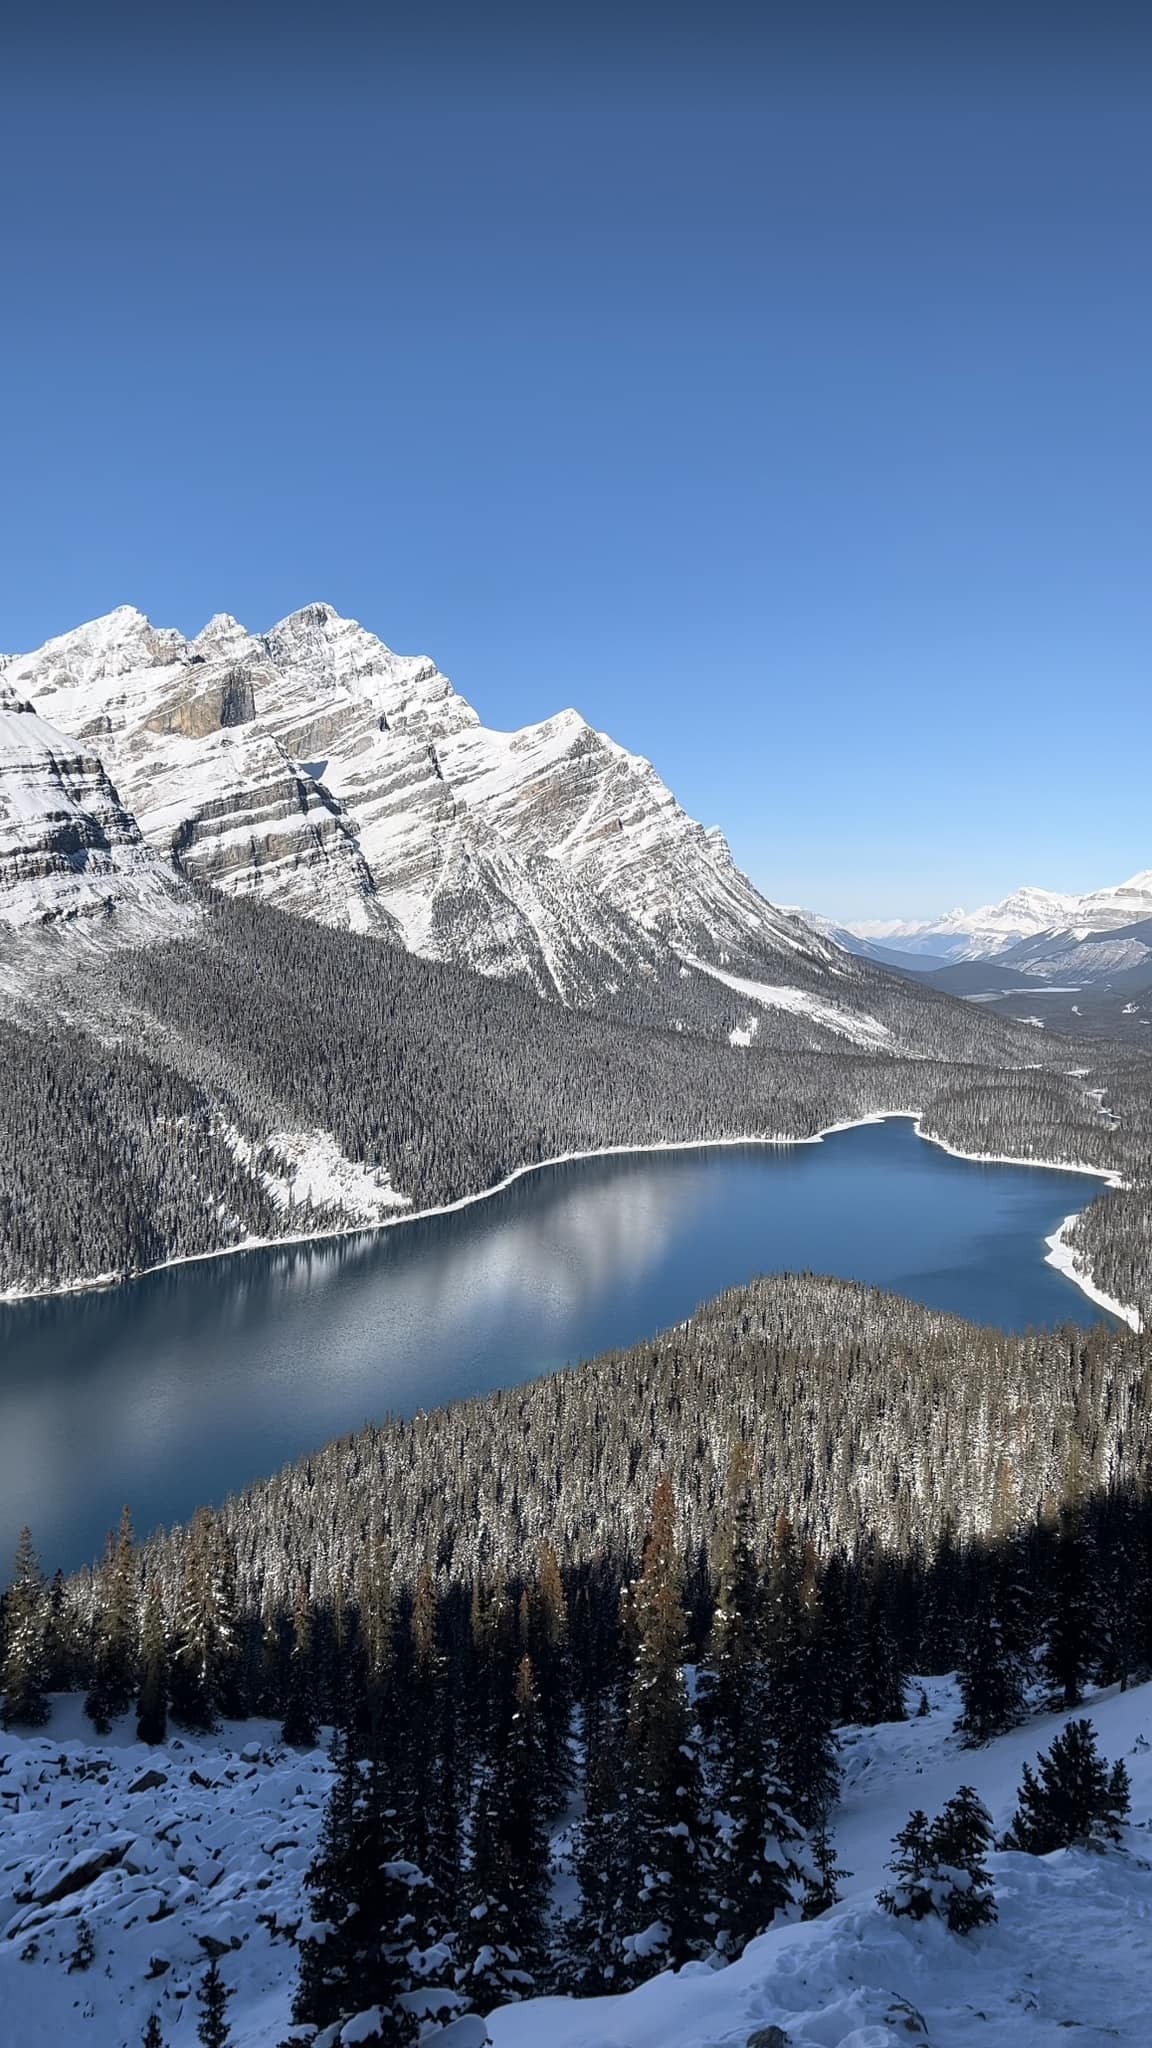 Banff and Lake Louise, Alberta: A Winter Wonderland Retreat